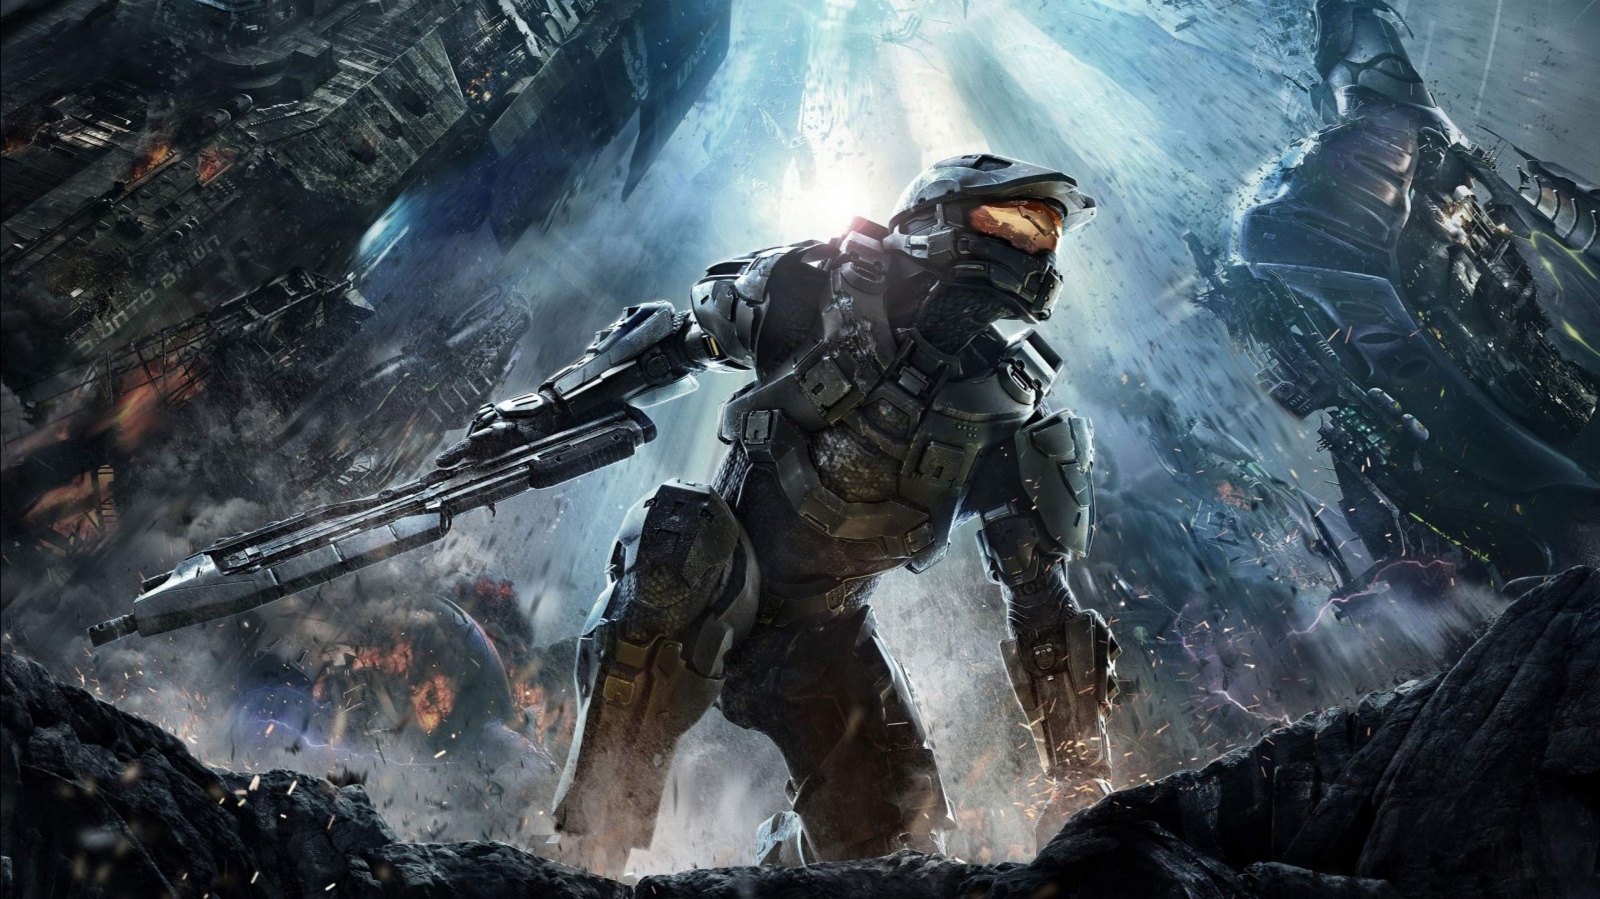 Vypuštěn videodeník o sérii Halo a studiu 343 Industries